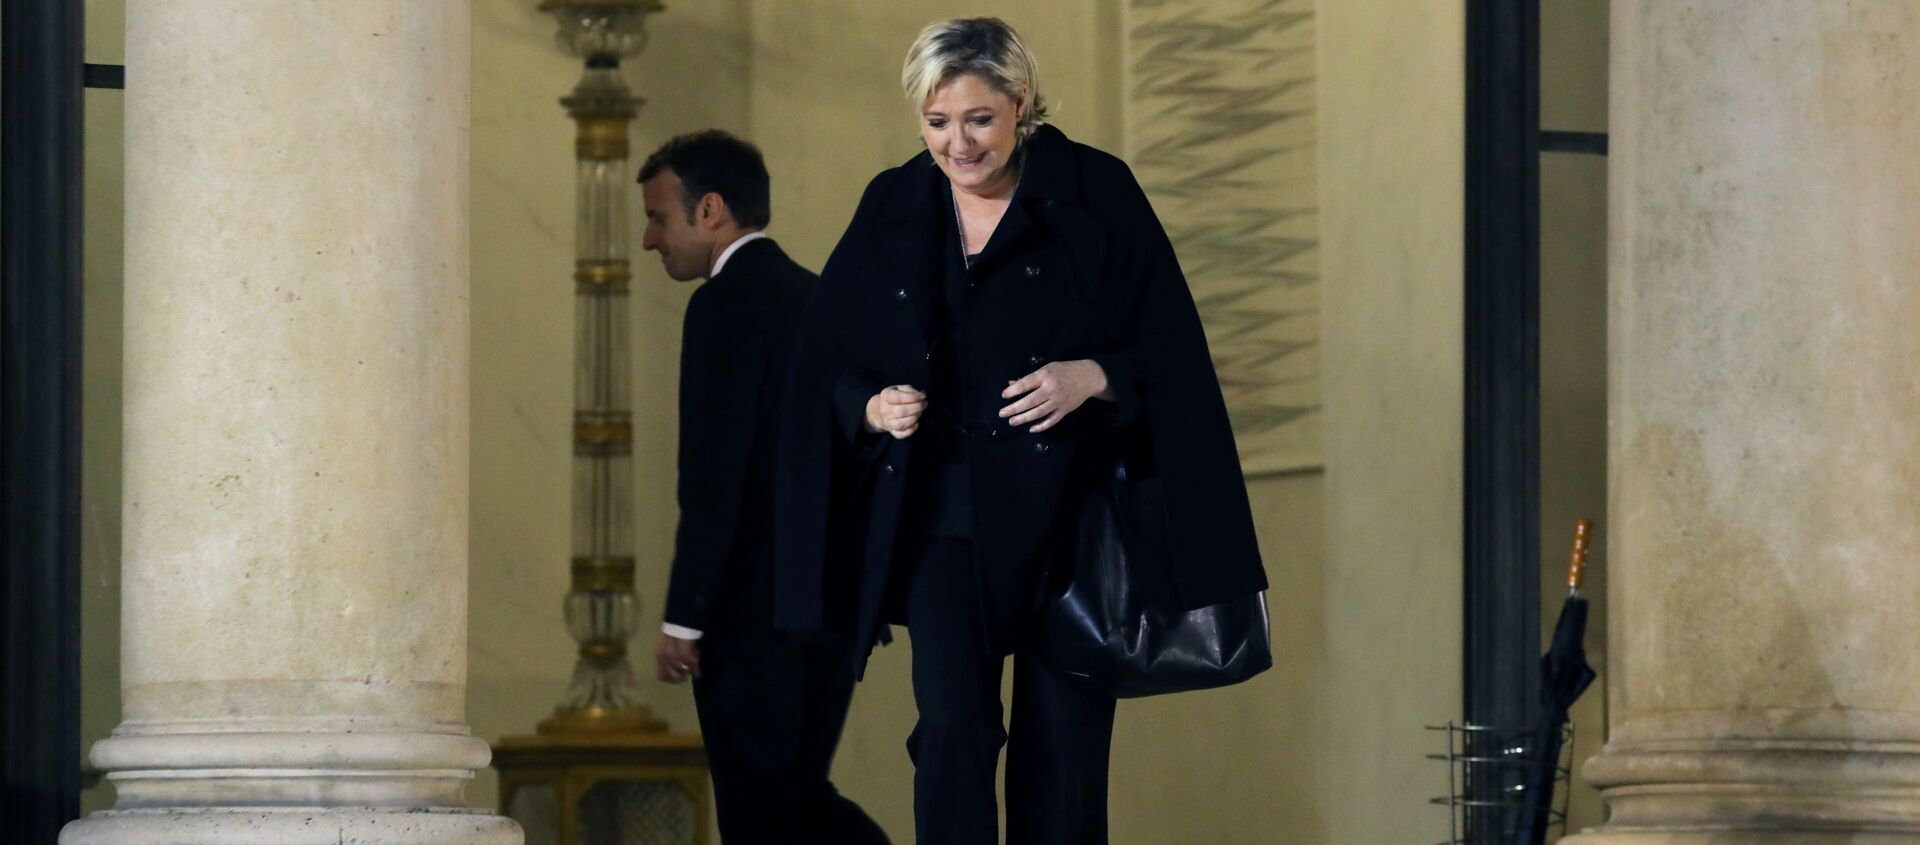 Marine Le Pen y Emmanuel Macron, candidatos a la presidencia de Francia - Sputnik Mundo, 1920, 05.11.2019